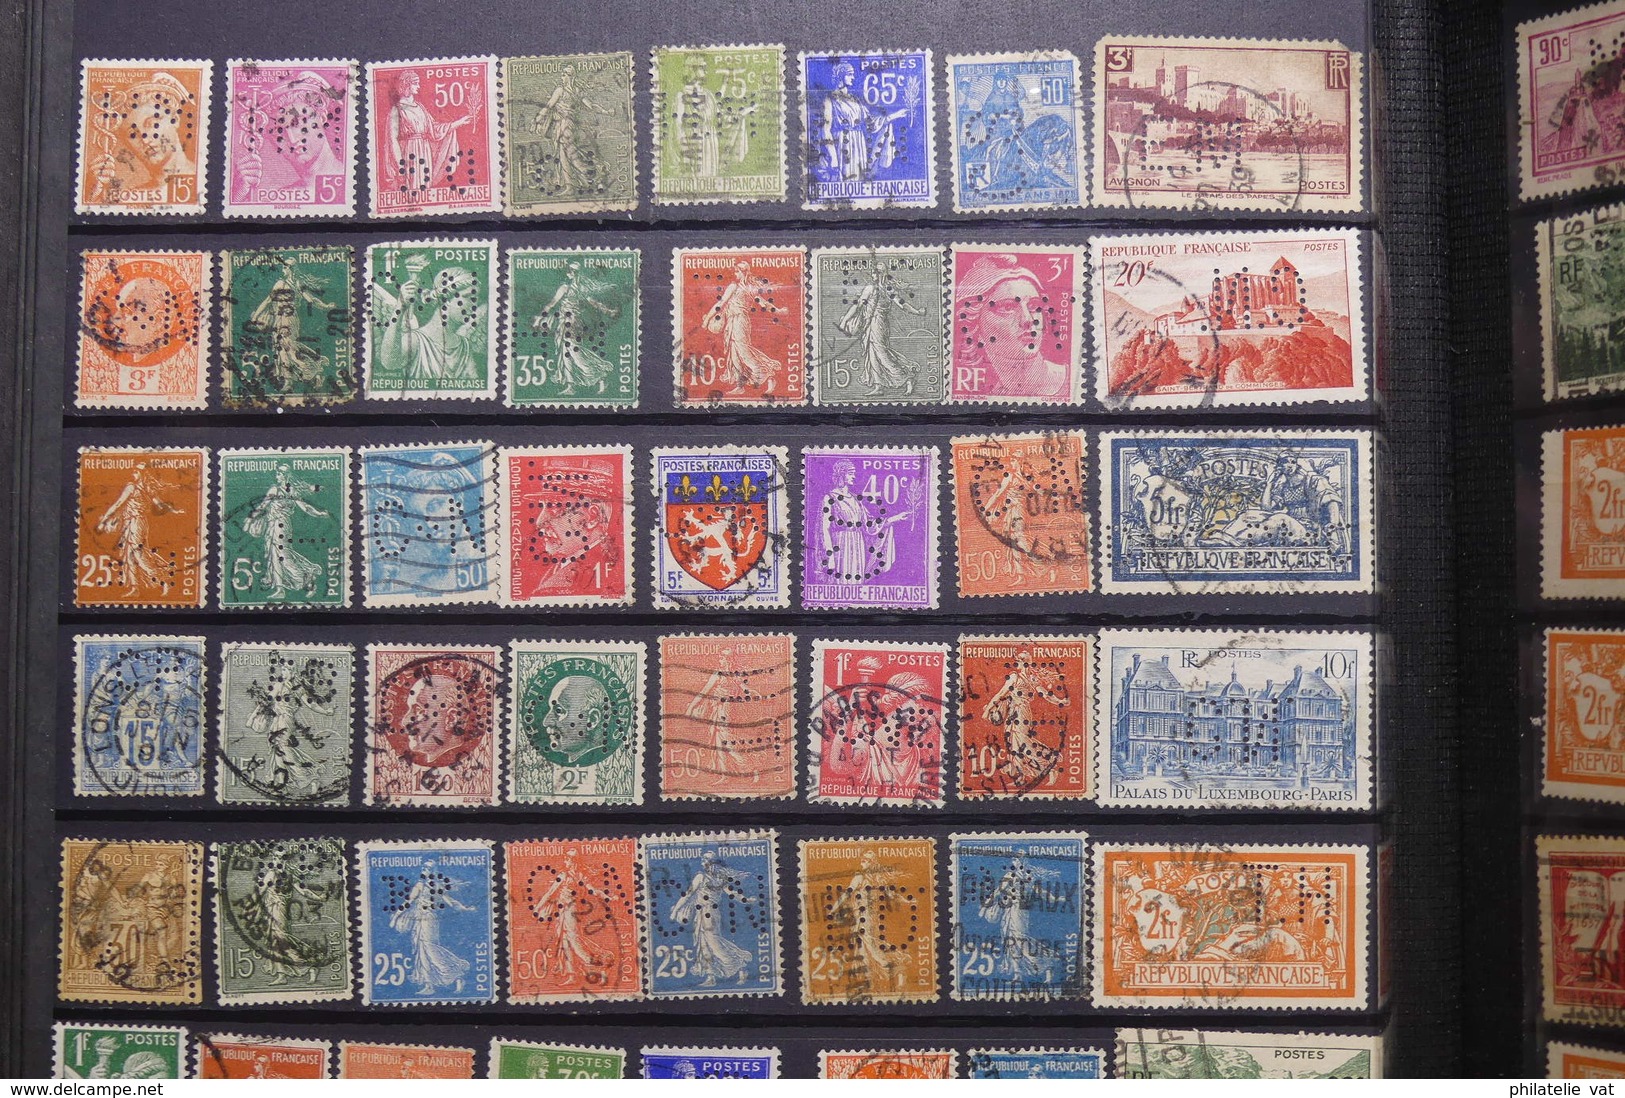 FRANCE - Album de timbres perforés - Plus de 1.000 pièces - A étudier - Nature - P 22662